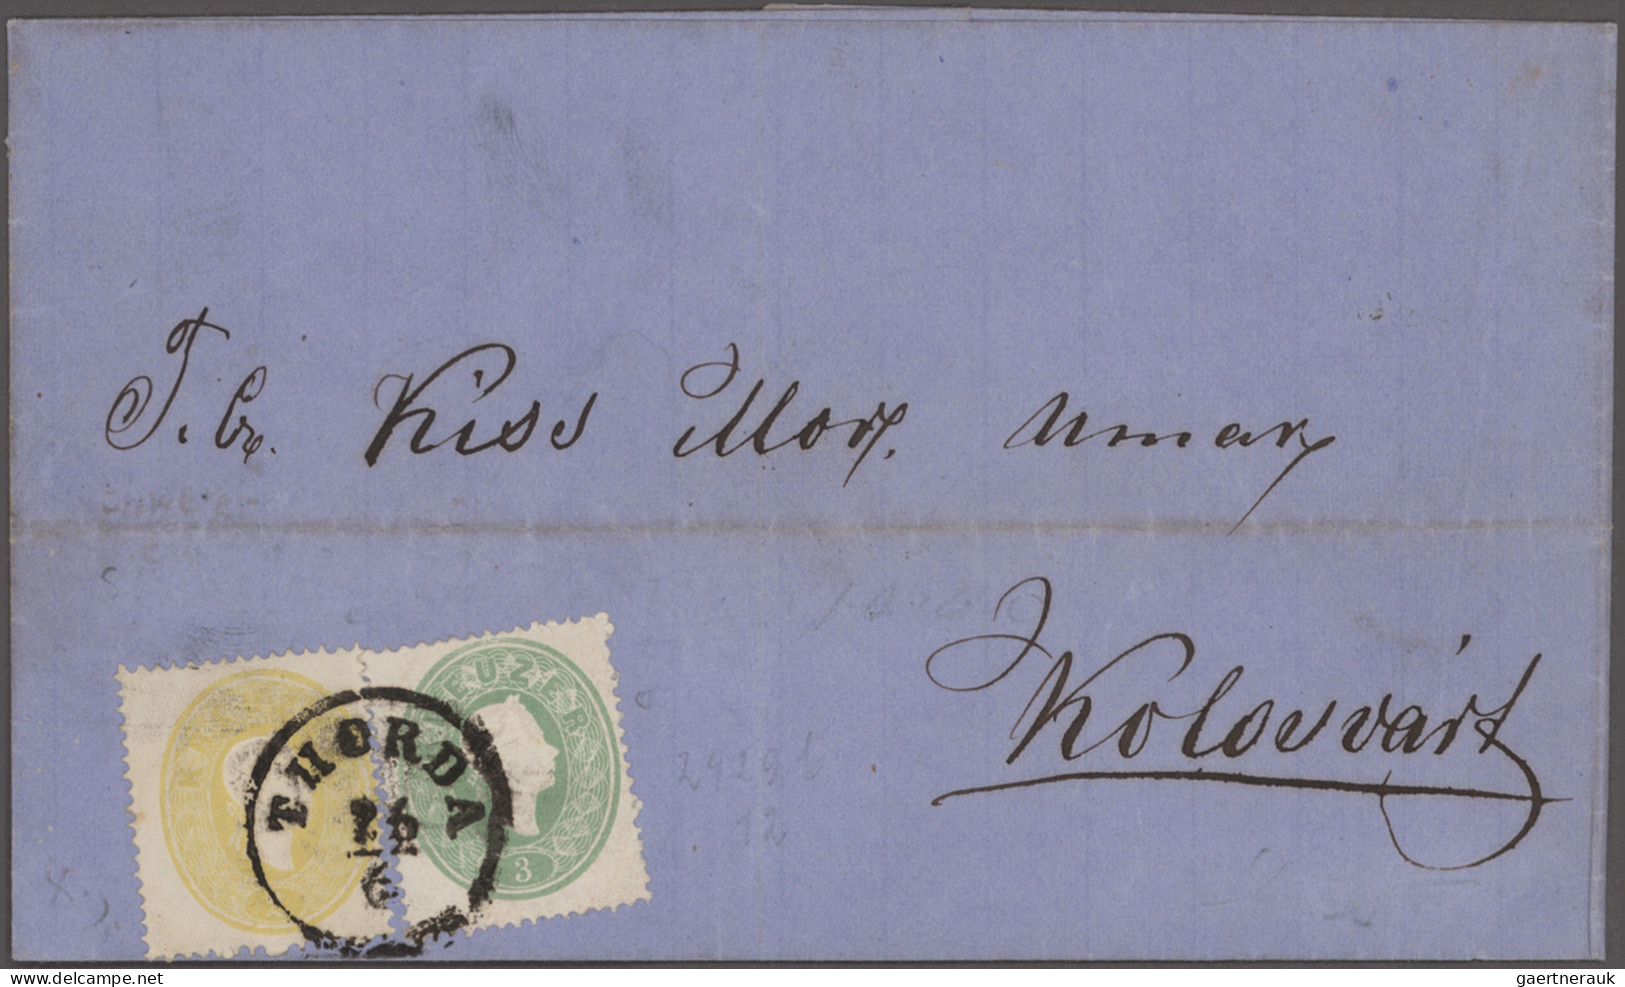 Österreich: 1850/1867 ca.: Sammlung von 52 Briefen im Album, ab erster Ausgabe,